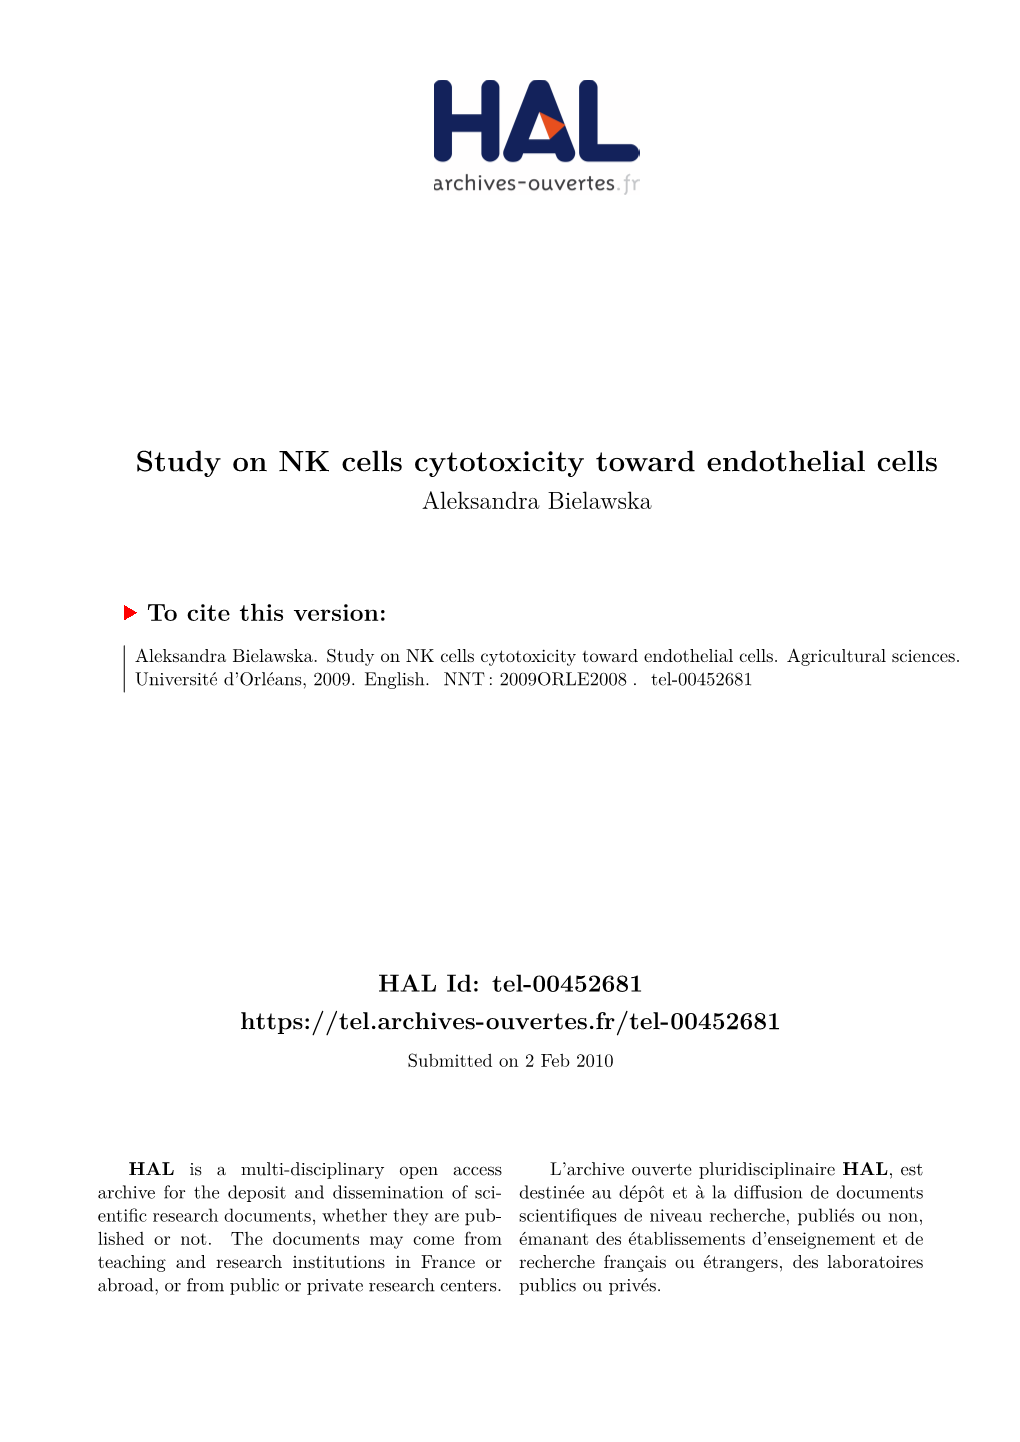 Study on NK Cells Cytotoxicity Toward Endothelial Cells Aleksandra Bielawska